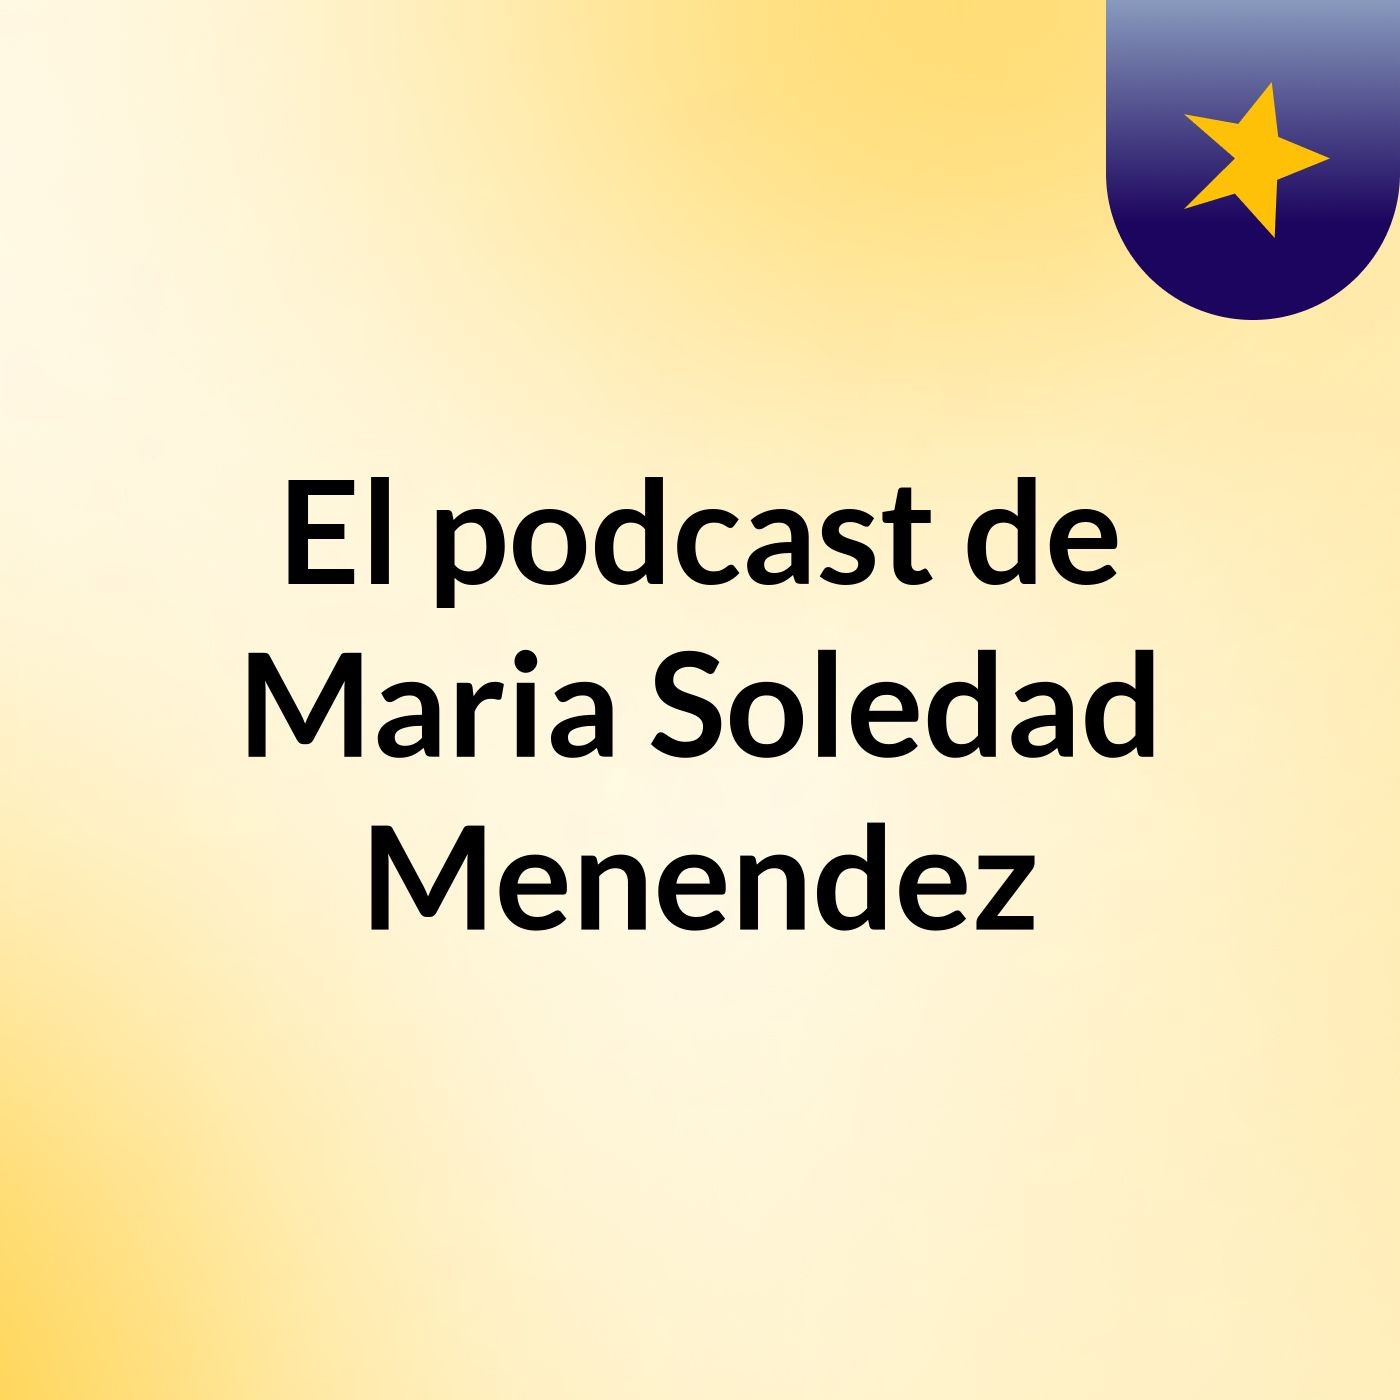 El podcast de Maria Soledad Menendez